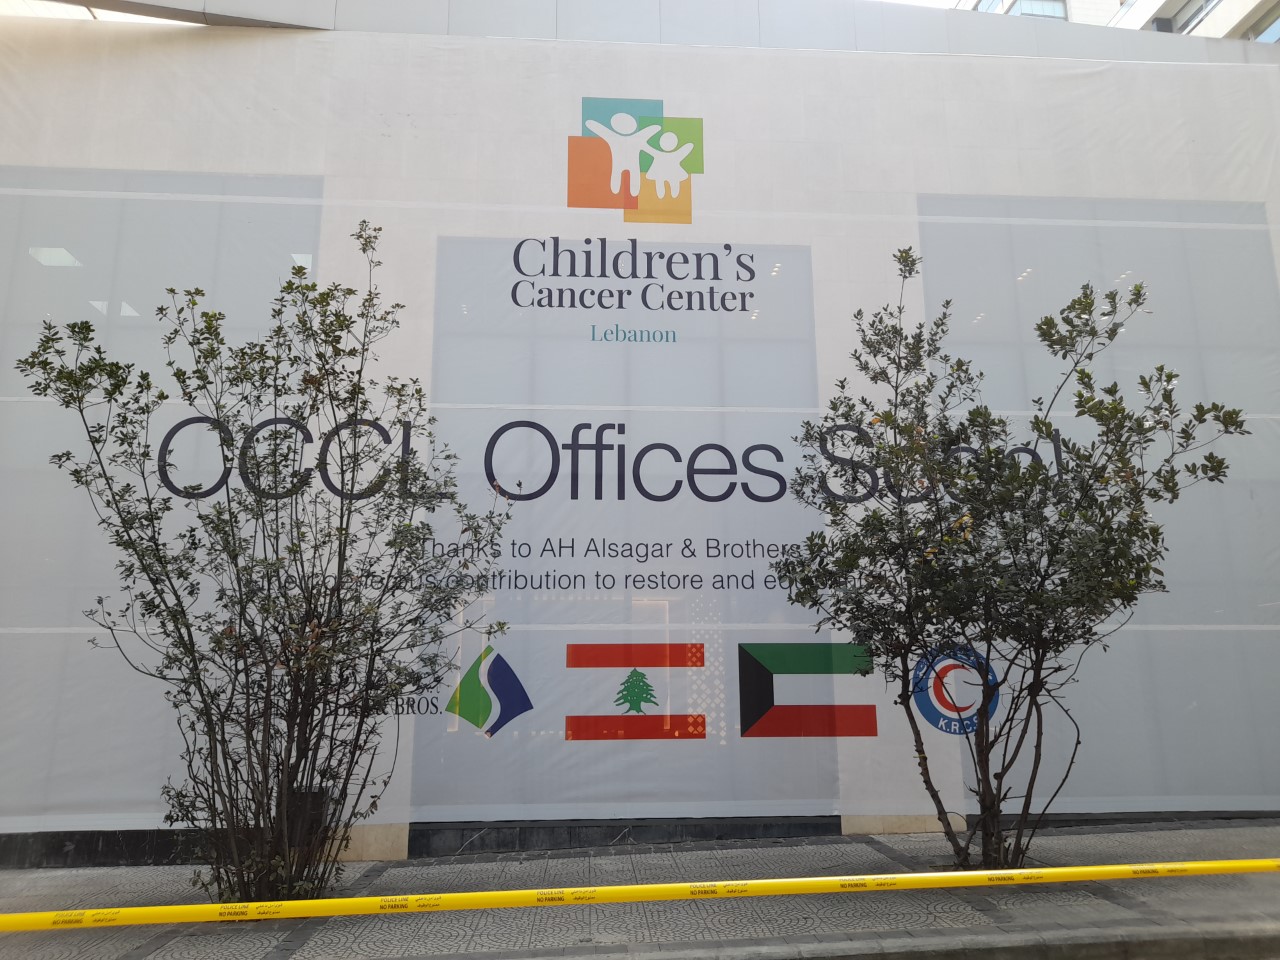 ترميم وتجهيز المبنى التابع لمركز سرطان الاطفال في لبنان بتبرع من شركة عبد الله الحمد الصقر